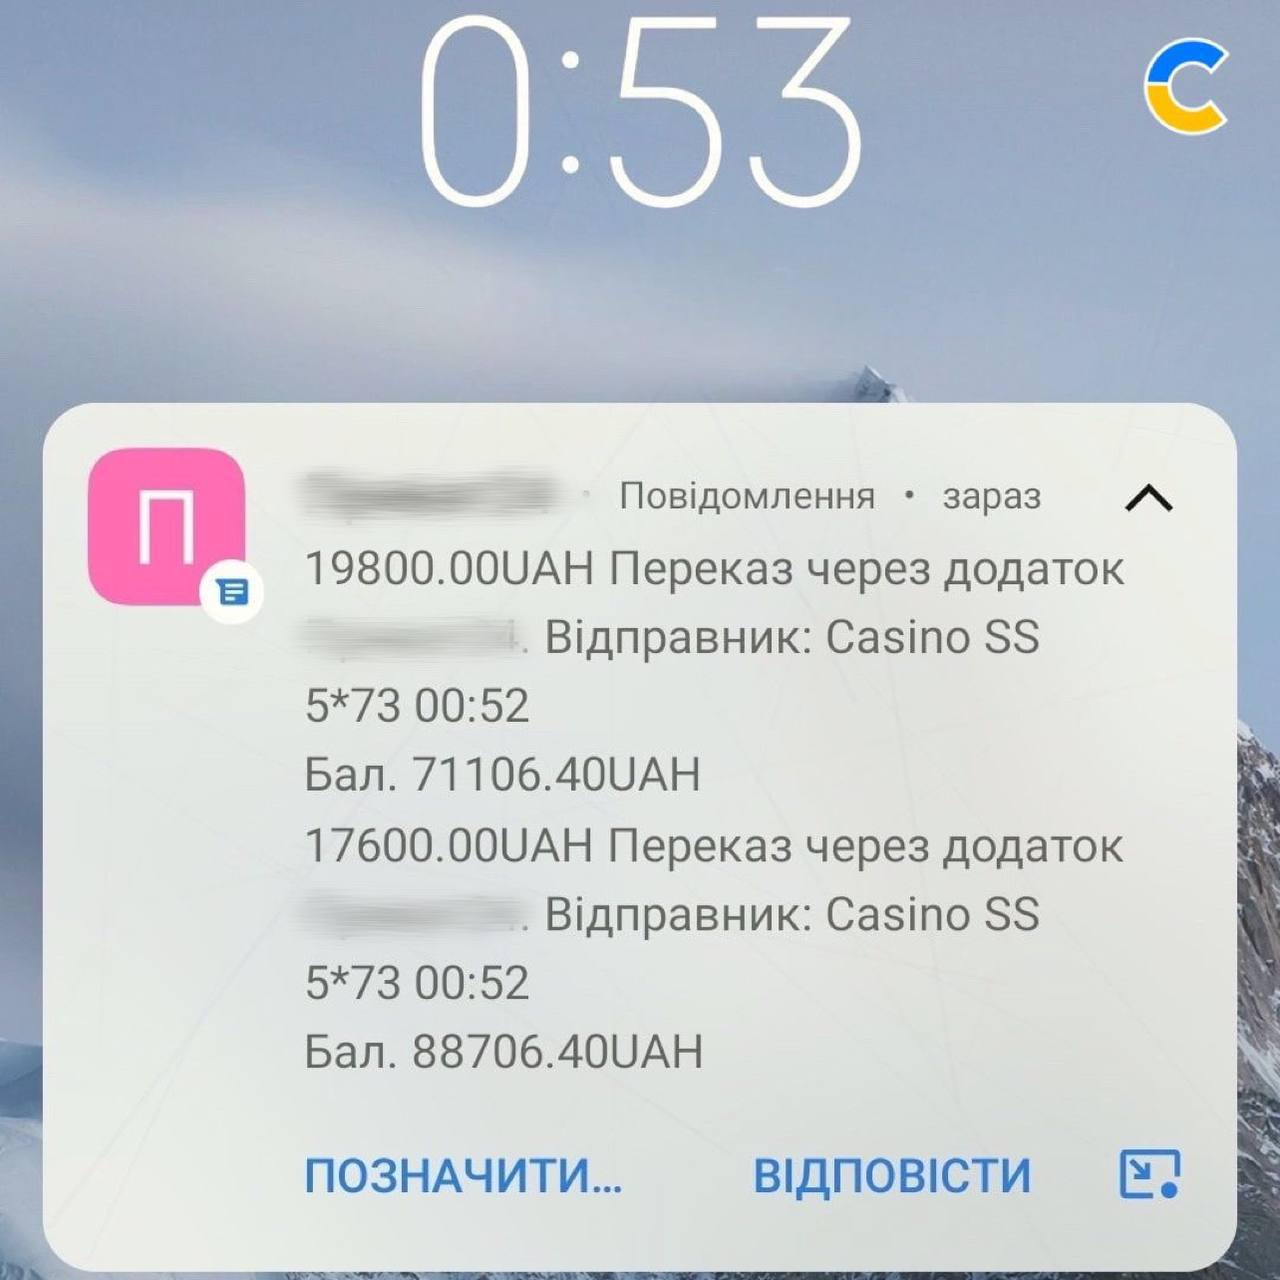 Труха телеграмм украина на русском языке фото 89